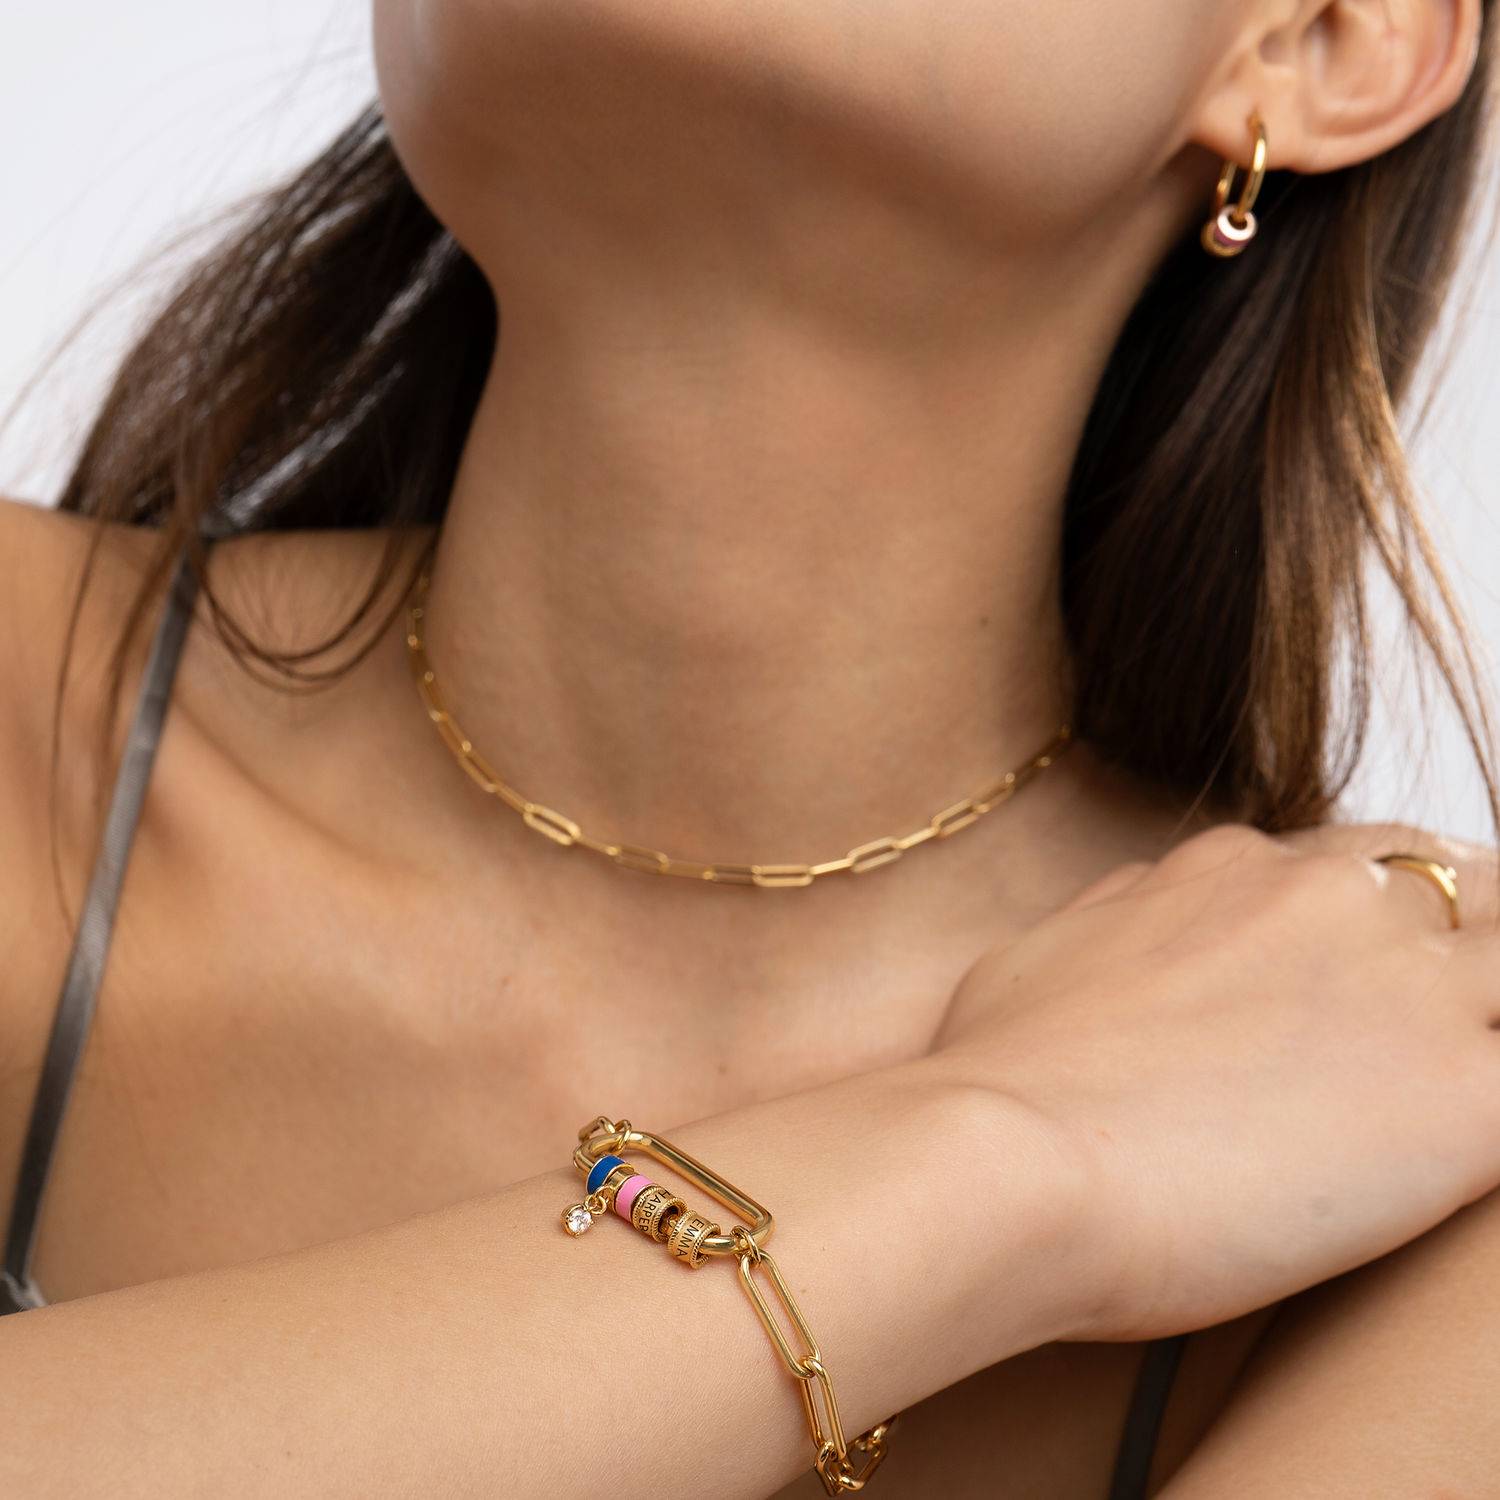 Linda armband met ovale sluiting en diamant in 18k goud vermeil-1 Productfoto